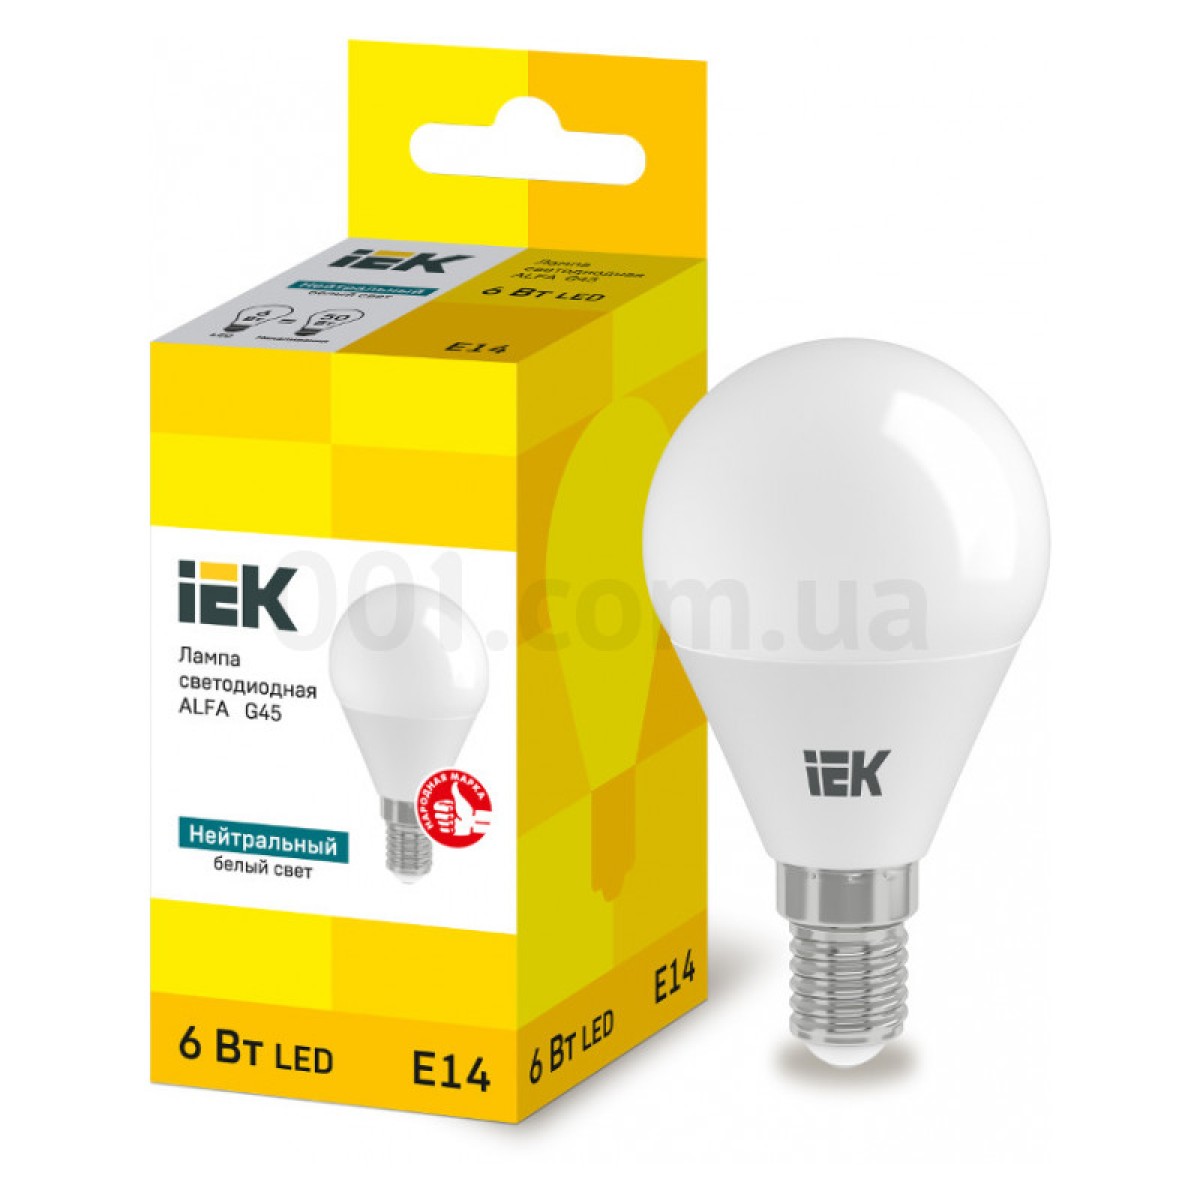 Світлодіодна лампа LED ALFA G45 (куля) 6 Вт 230В 4000К E14, IEK 256_256.jpg